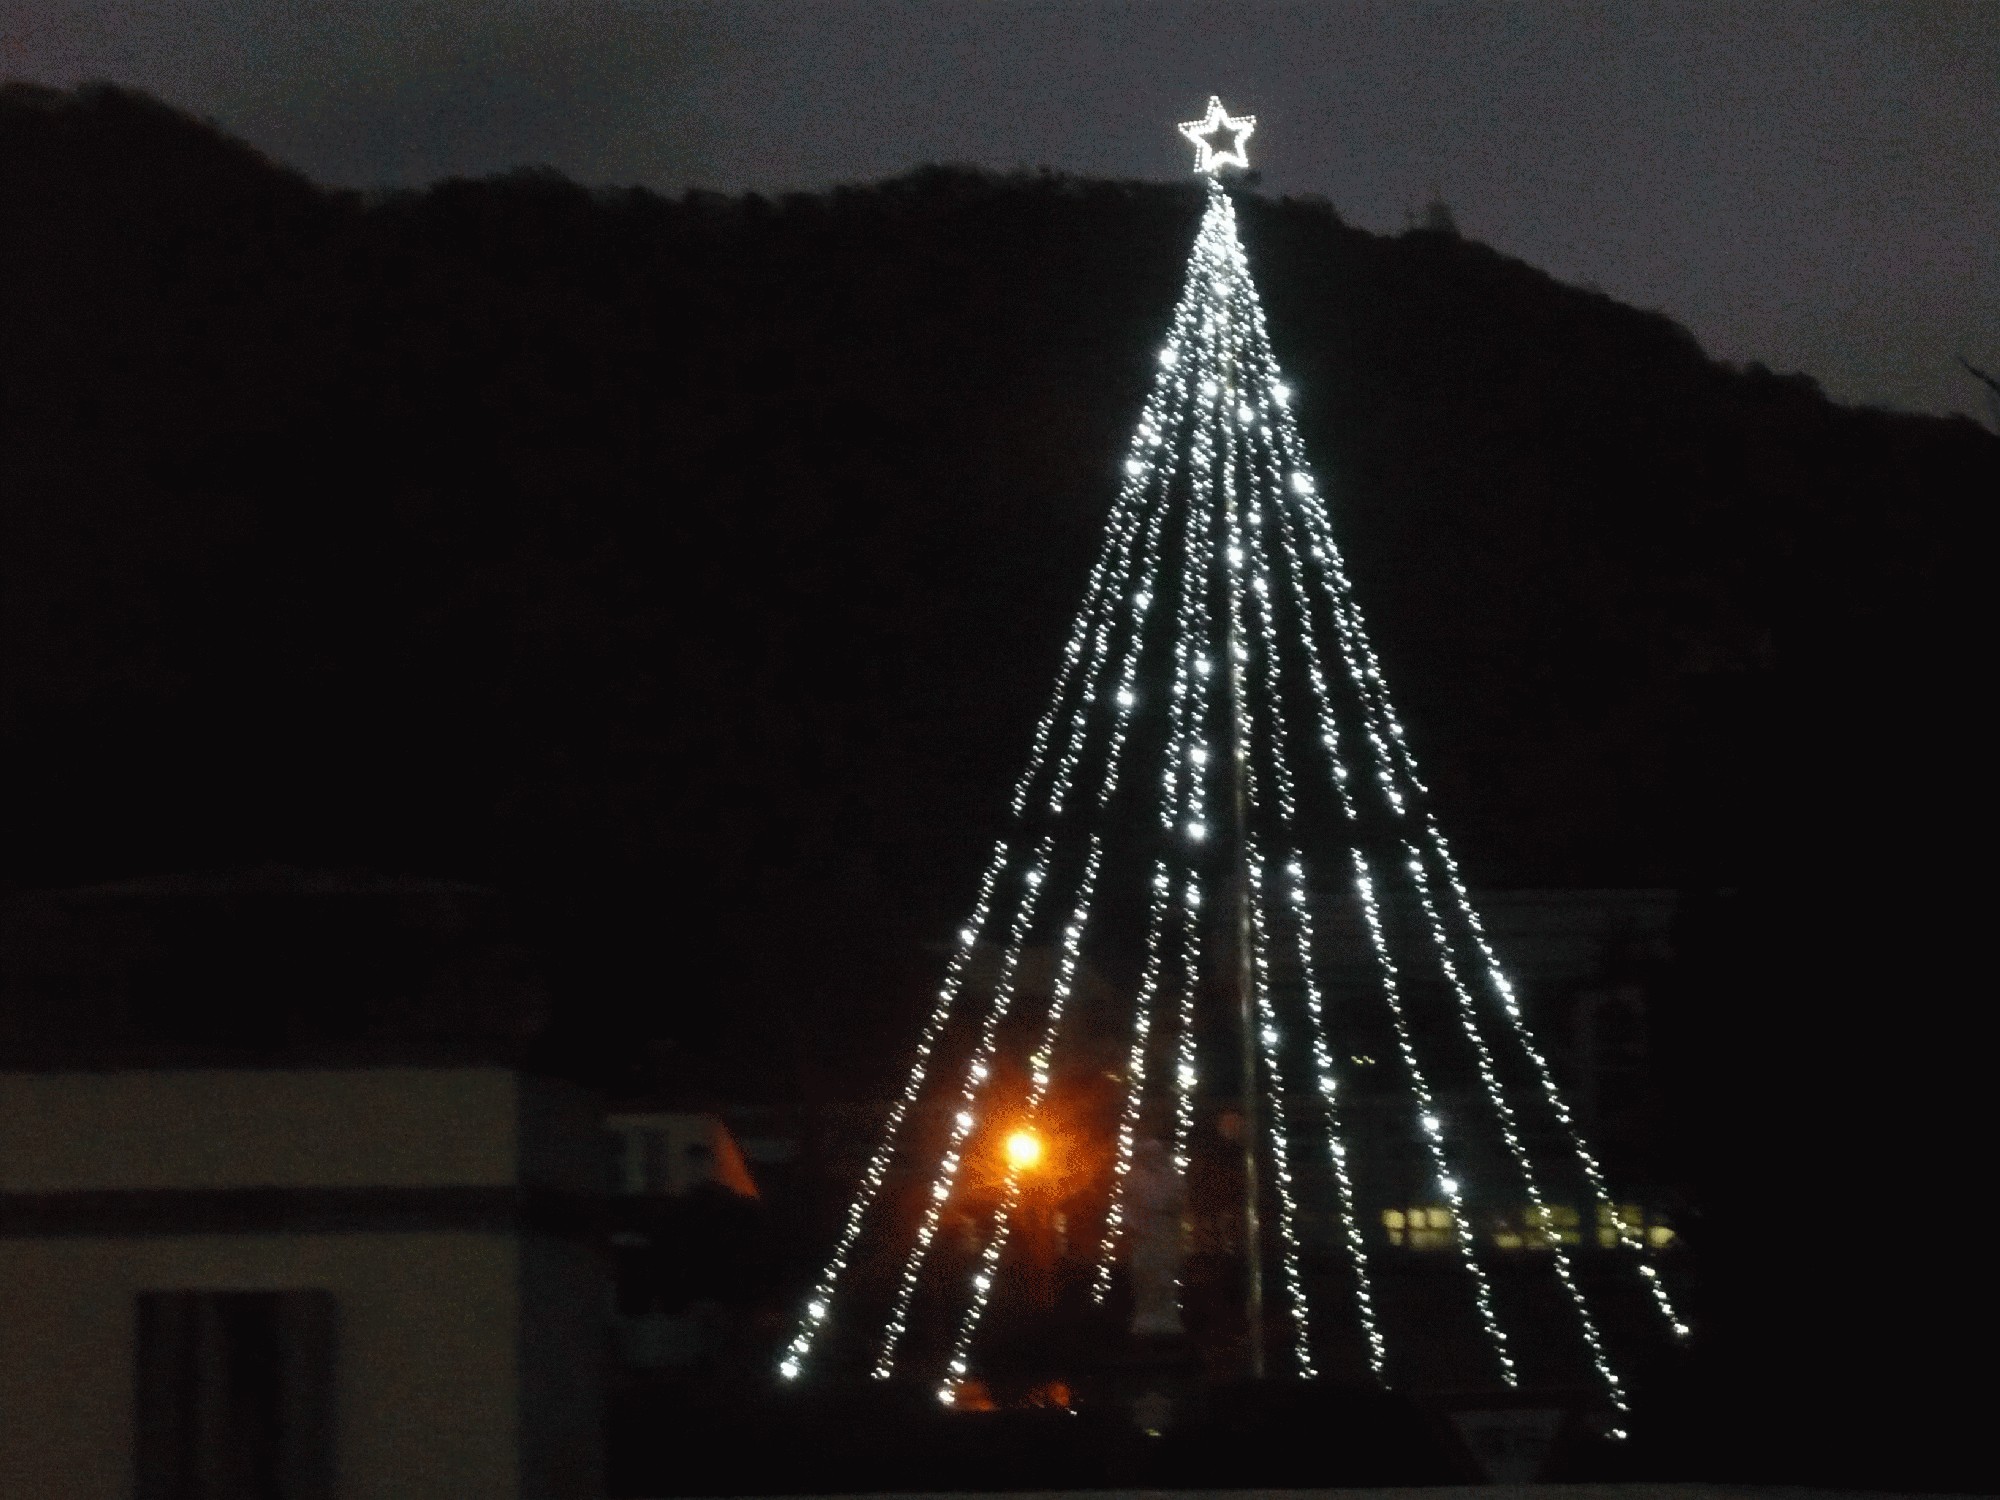 ２０１７年１２月４日 月 クリスマスツリーイルミネーション点灯 学校法人聖ヨゼフ学園 舞鶴聖母幼稚園